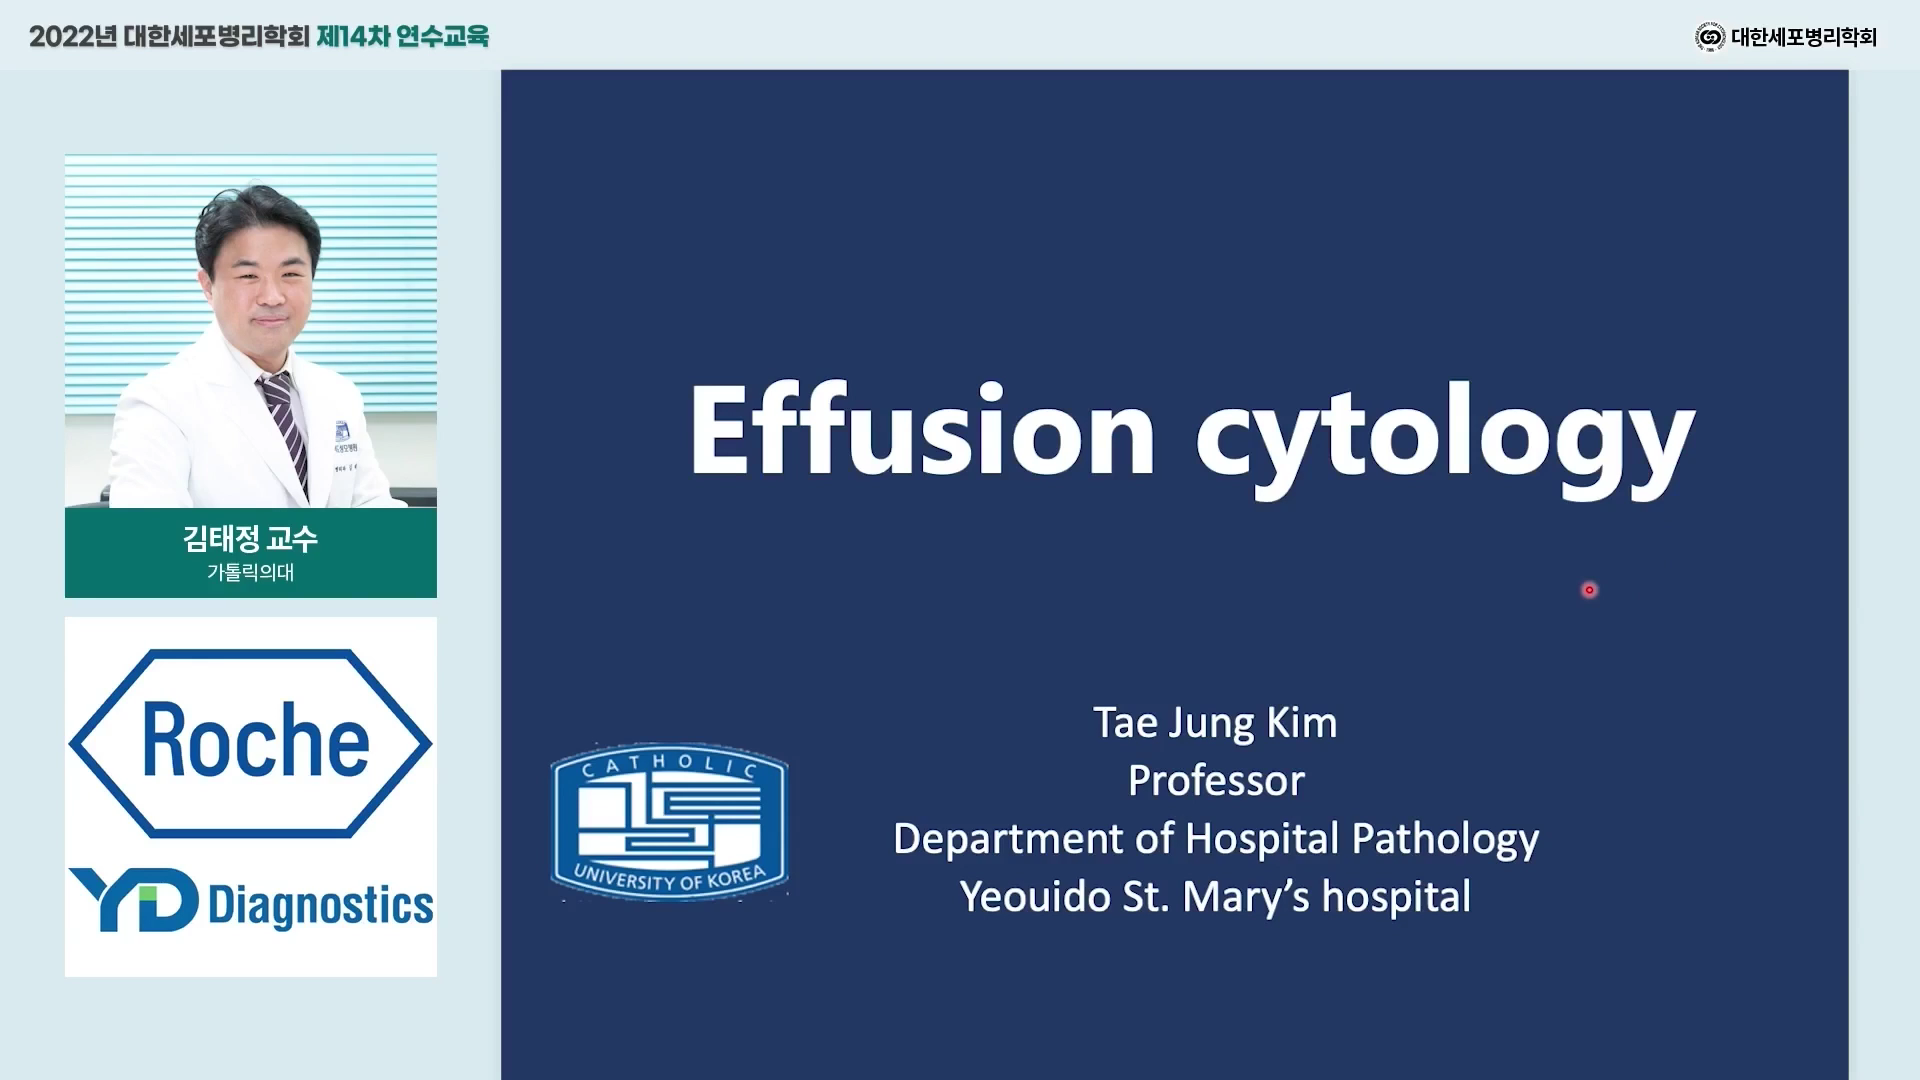 Effusion cytology